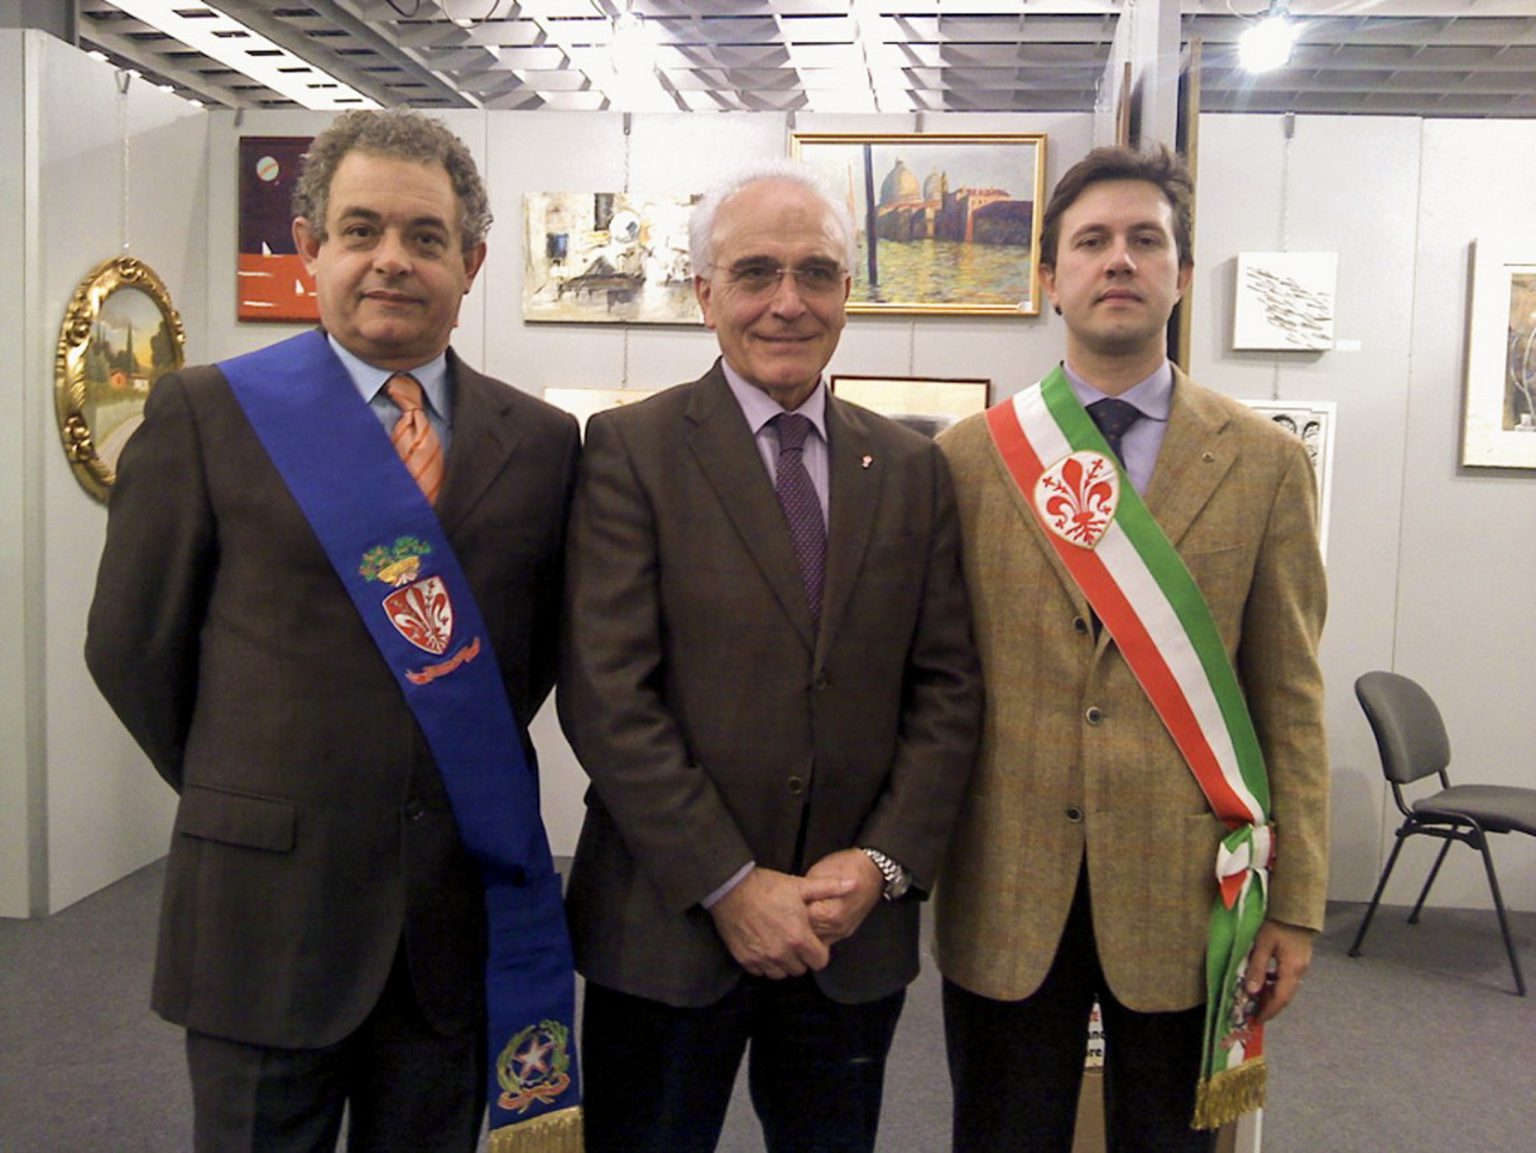 Les œuvres d’art d’Antoine Gaber exposés lors de la collecte de fonds Fiorgen pour la recherche contre le cancer, à Florence en Italie. De gauche à droite M. Galgani, M. Nardella et M. Barducci